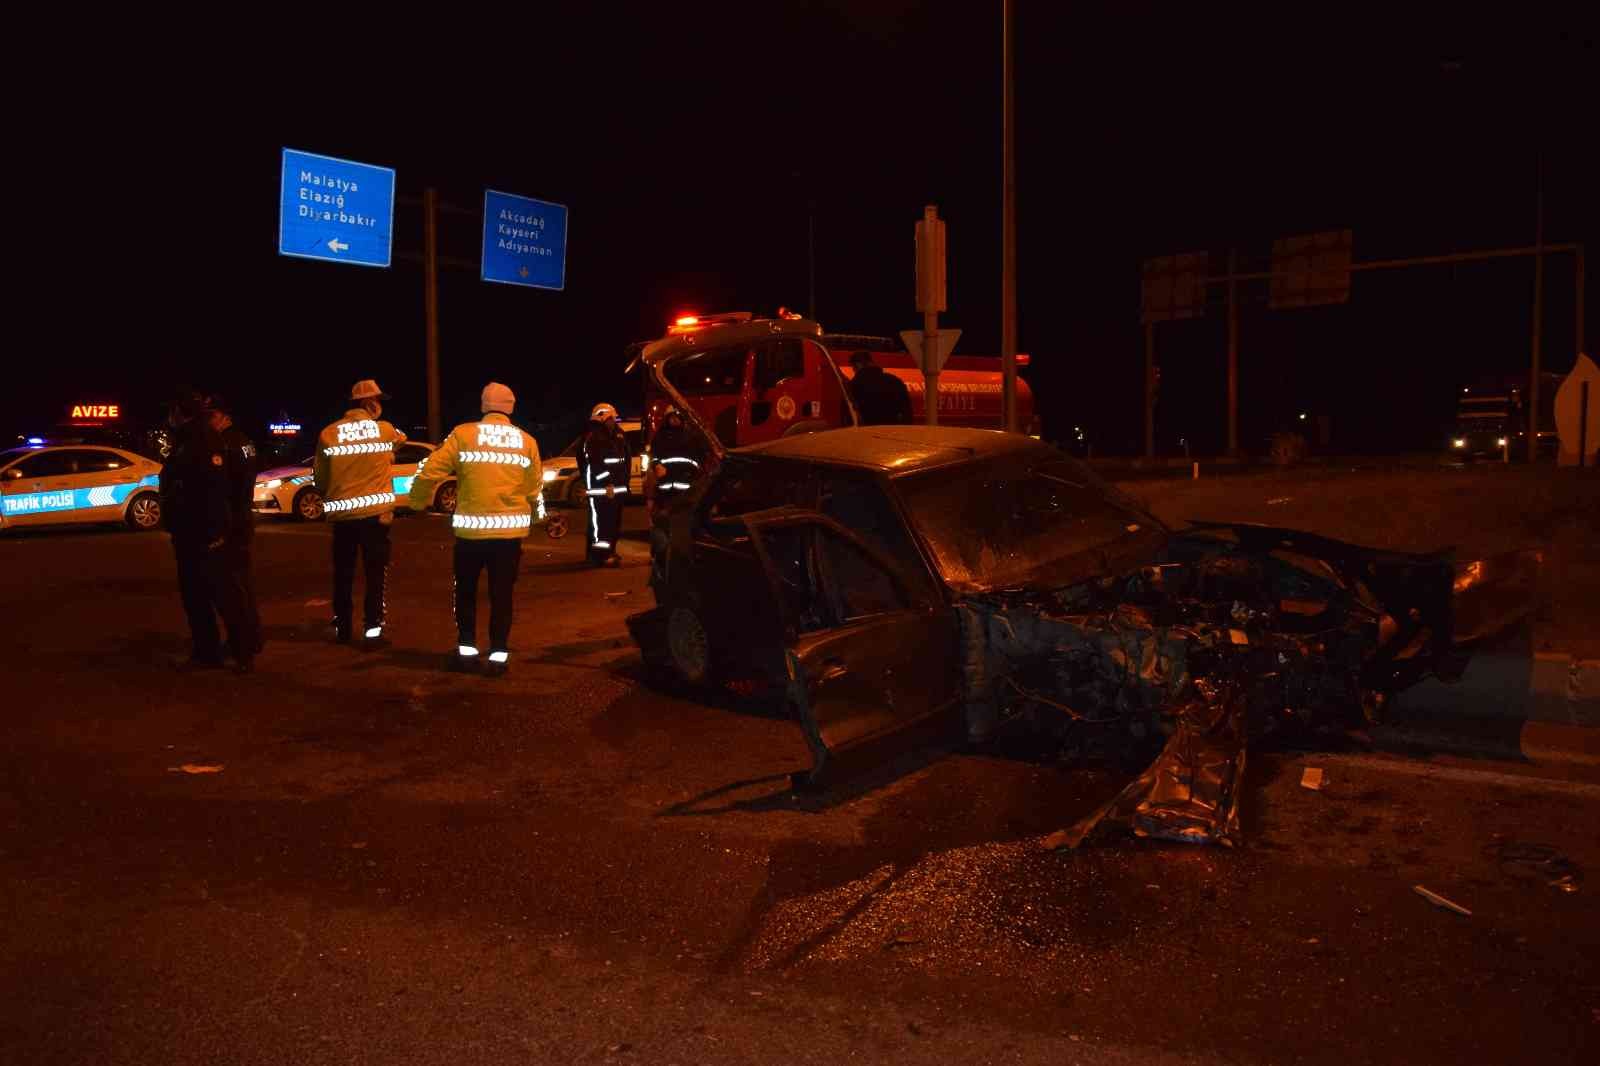 Tırın biçtiği aracın sürücüsü kurtarılamadı #malatya